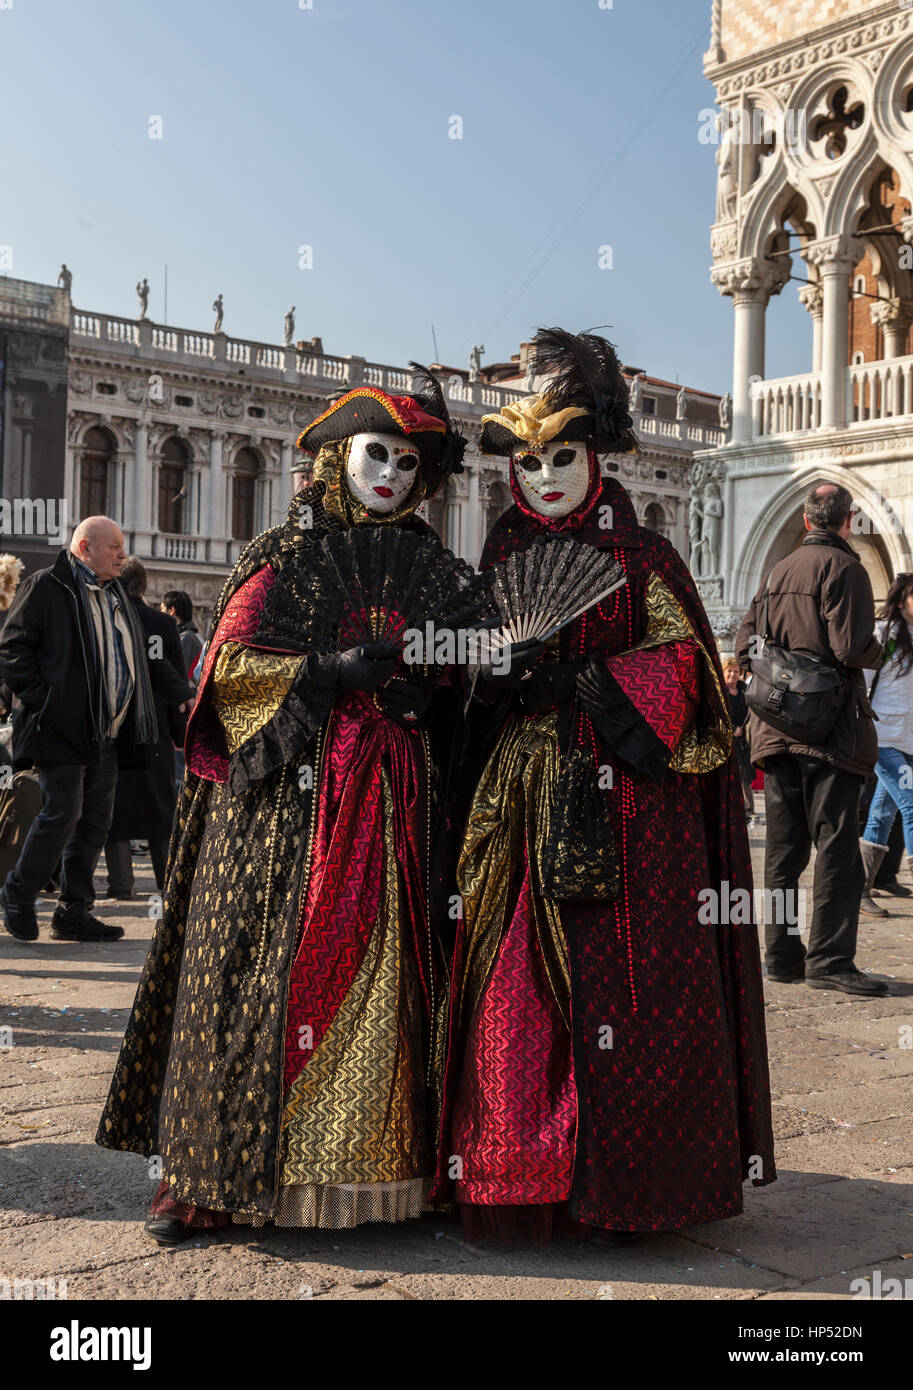 Venedig, Italien - 18. Februar 2012:Two Personen tragen schöne bunte Kostüme und Masken posiert in Piazza San Marco während der Karneval von Venedig. Stockfoto